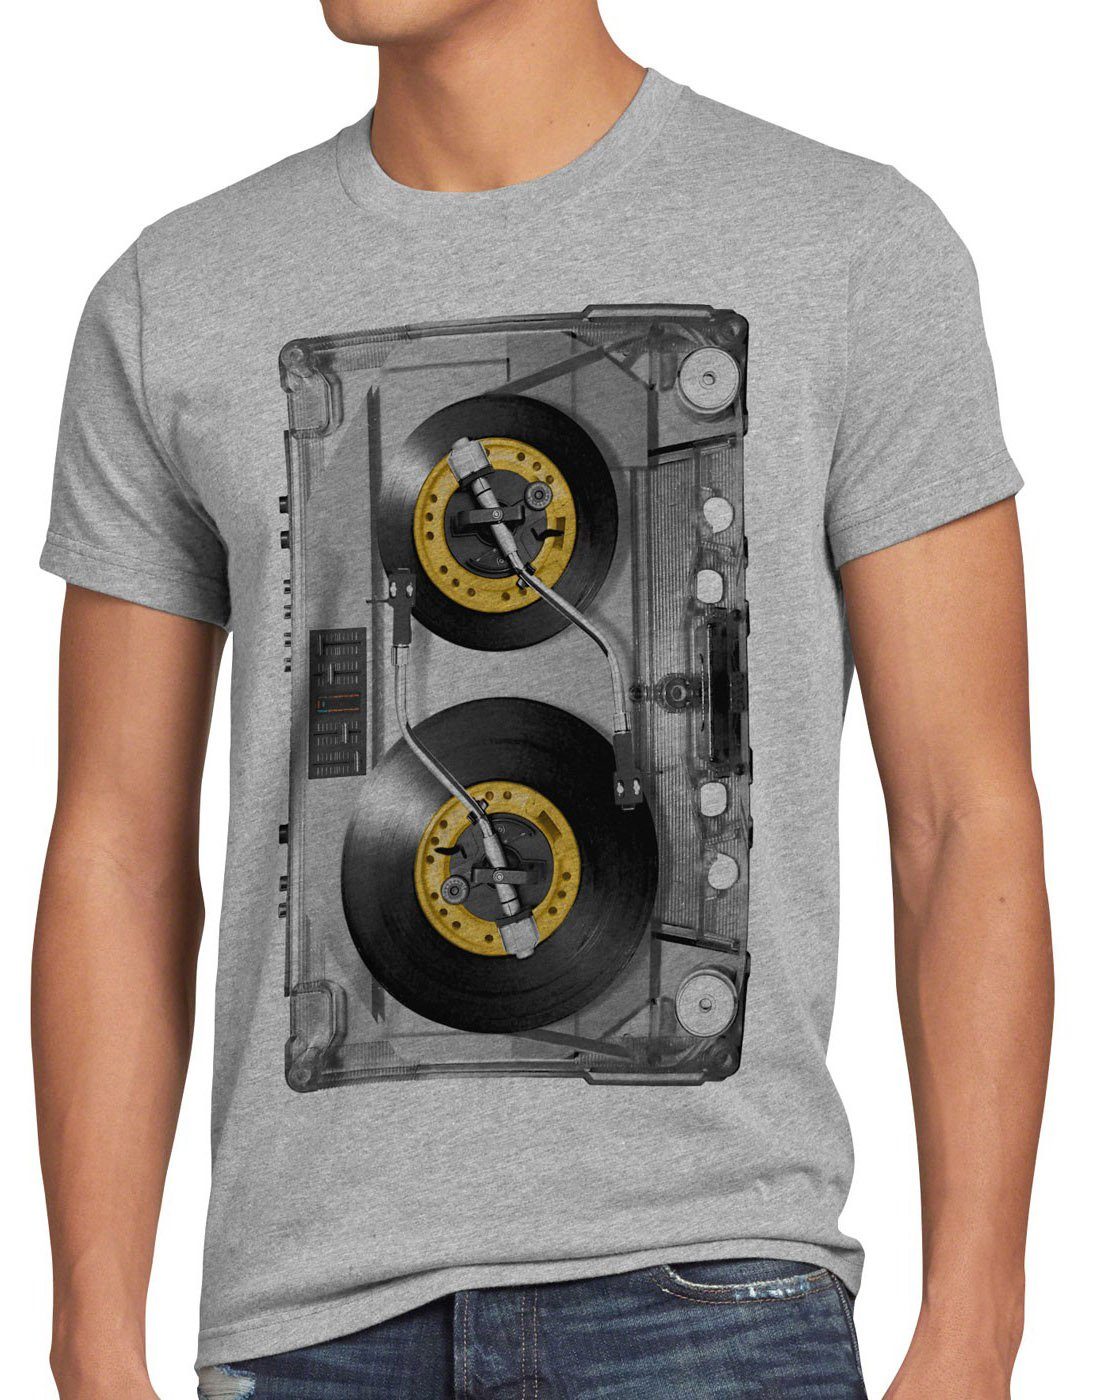 style3 Print-Shirt Herren T-Shirt DJ Tape mc musik disco 80er 90er retro kassette analog vinyl CD grau meliert